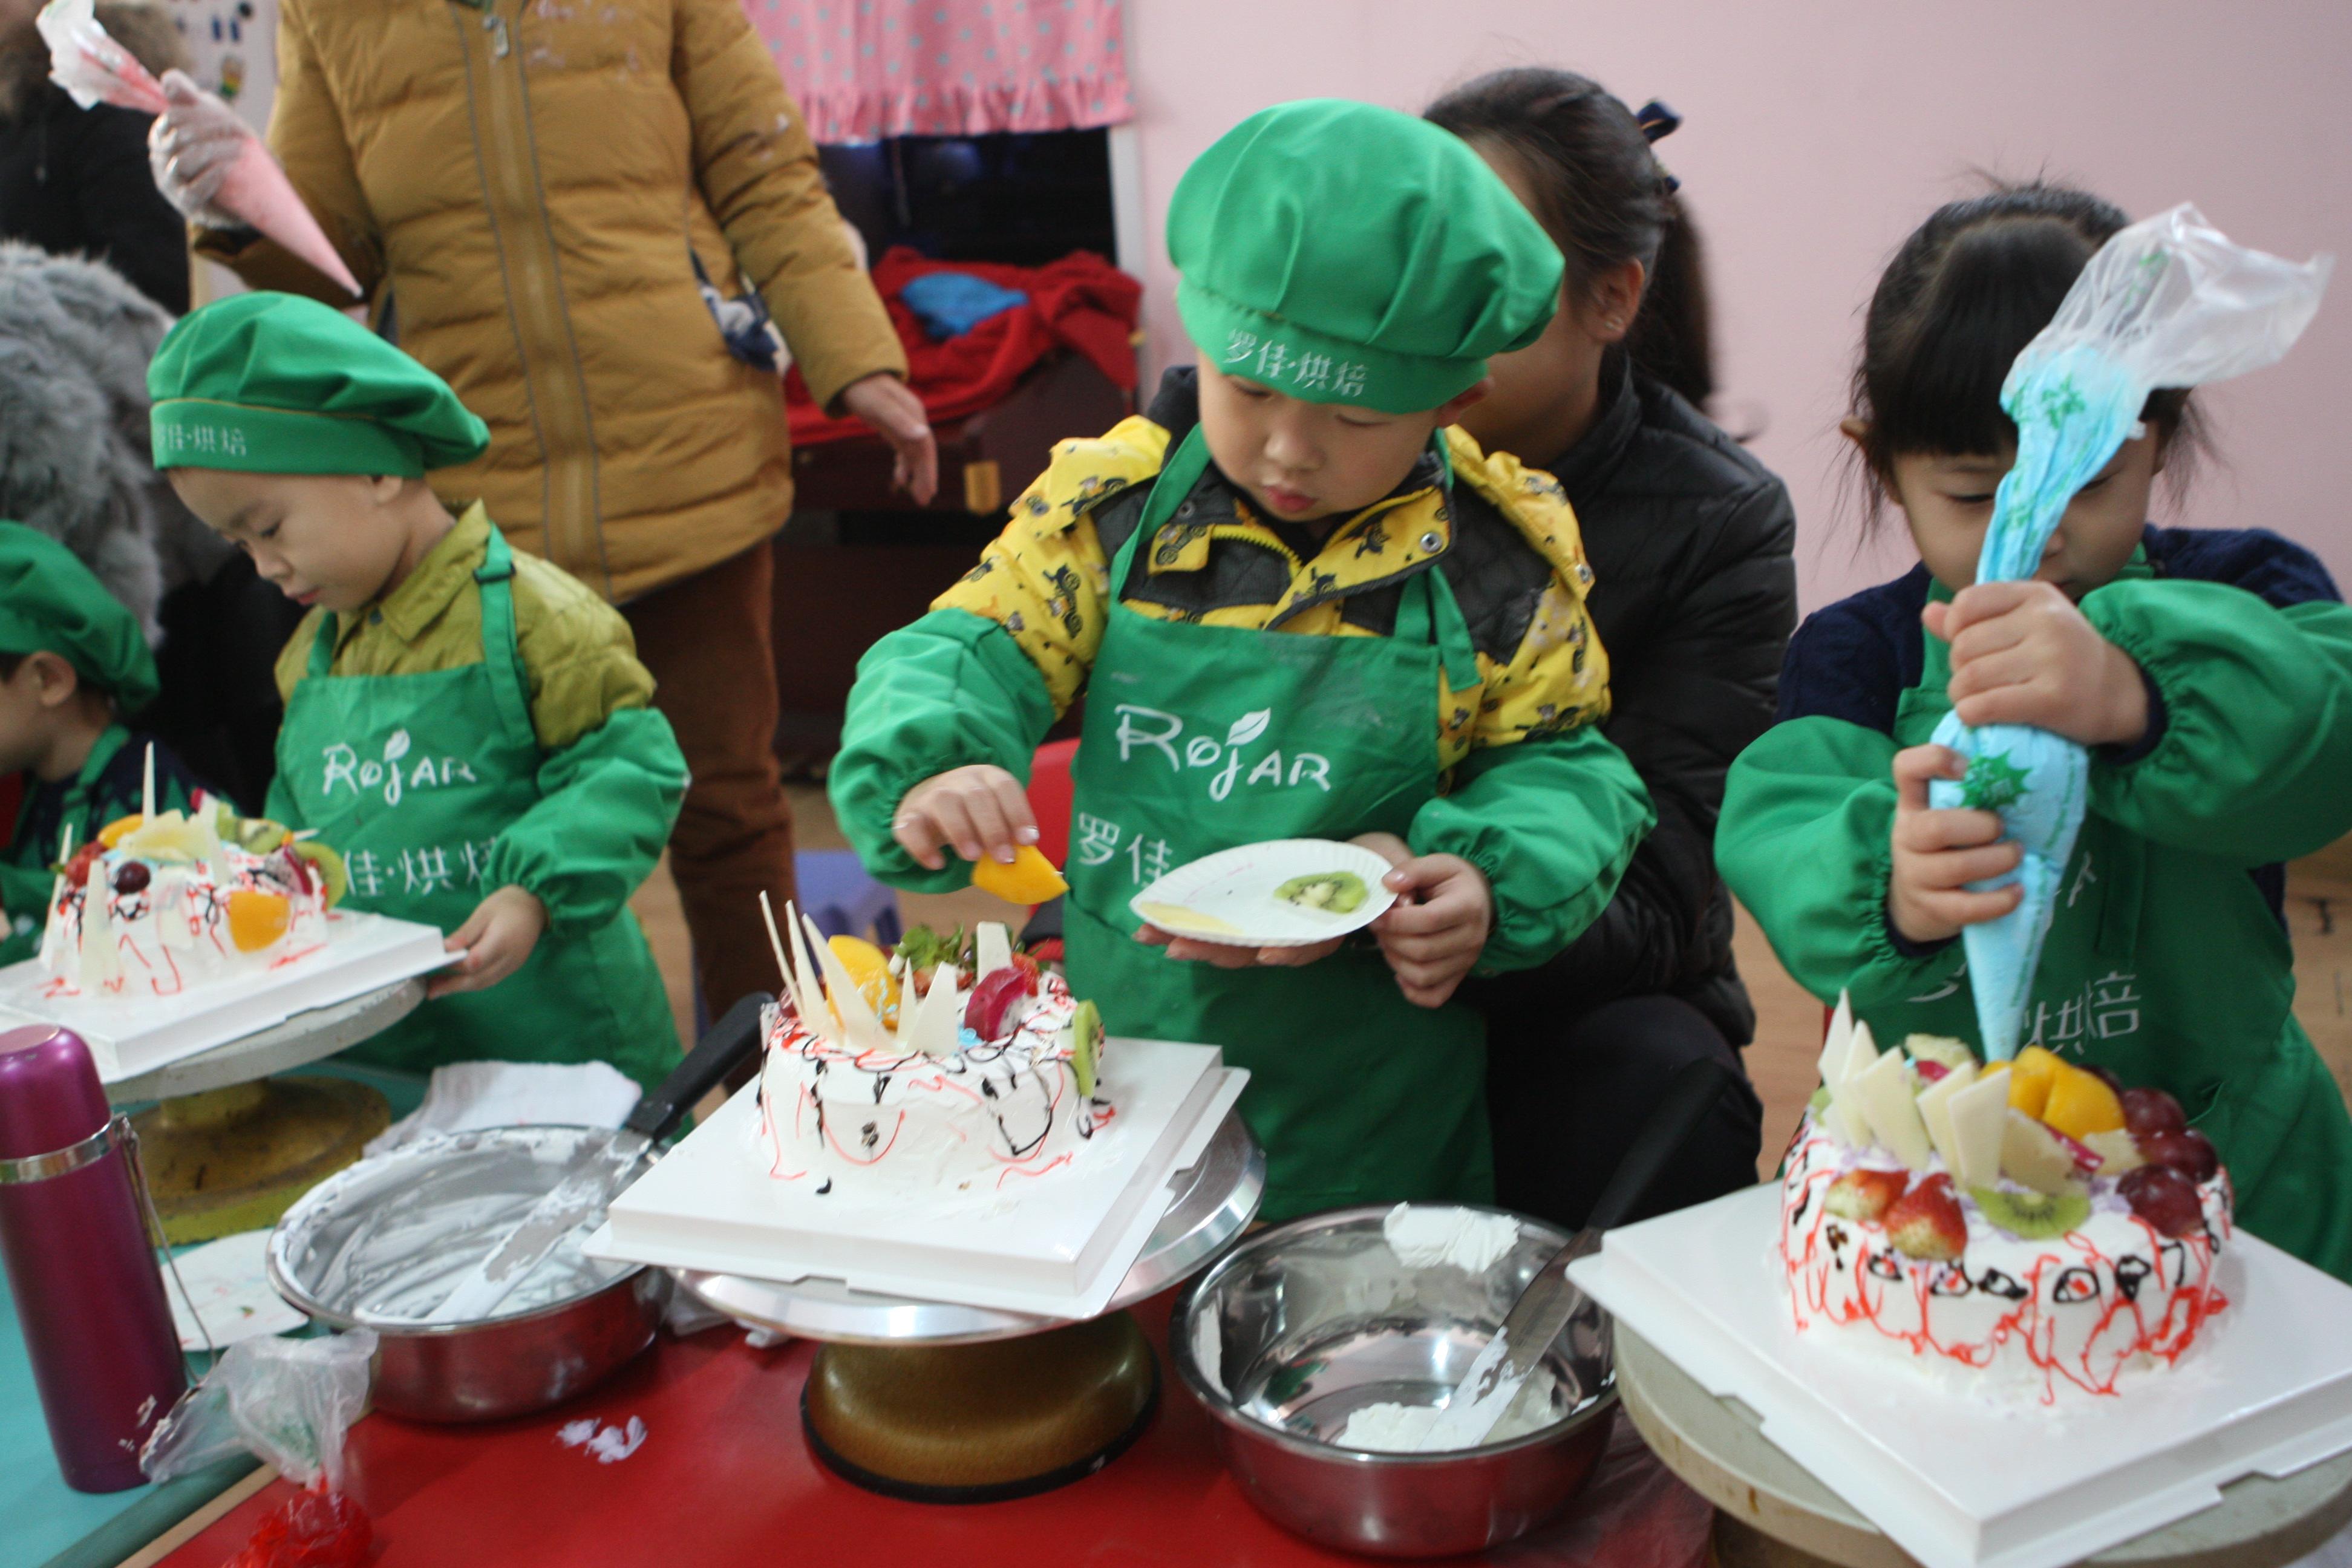 图片新闻:解放区孩子和家长一起制作蛋糕迎新